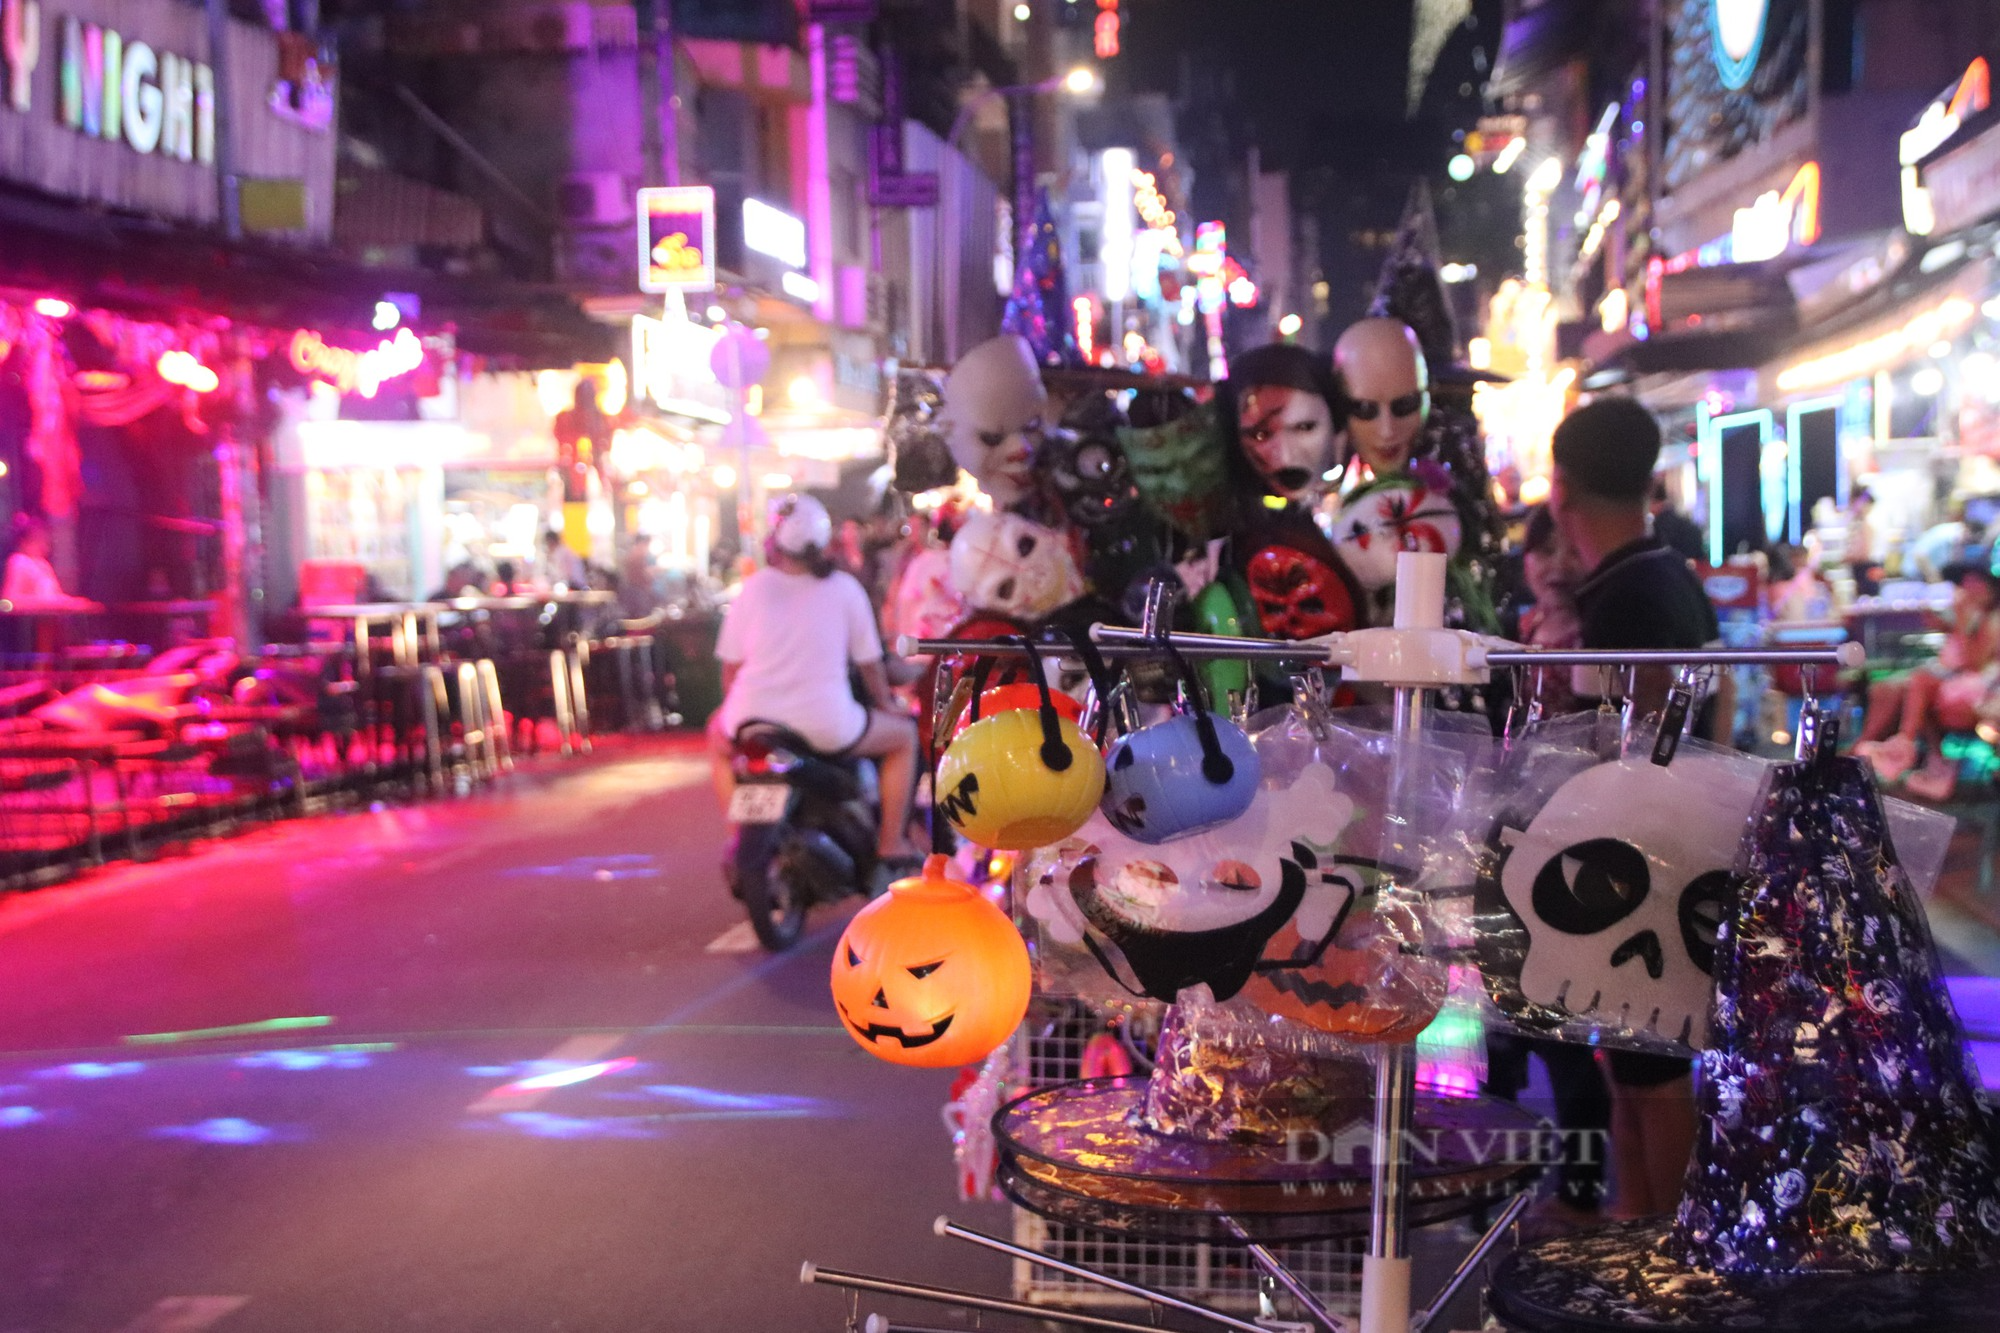 Giới trẻ Sài Gòn chơi Halloween sớm, phố Tây Bùi Viện ma mị, đông vui hết cỡ - Ảnh 7.